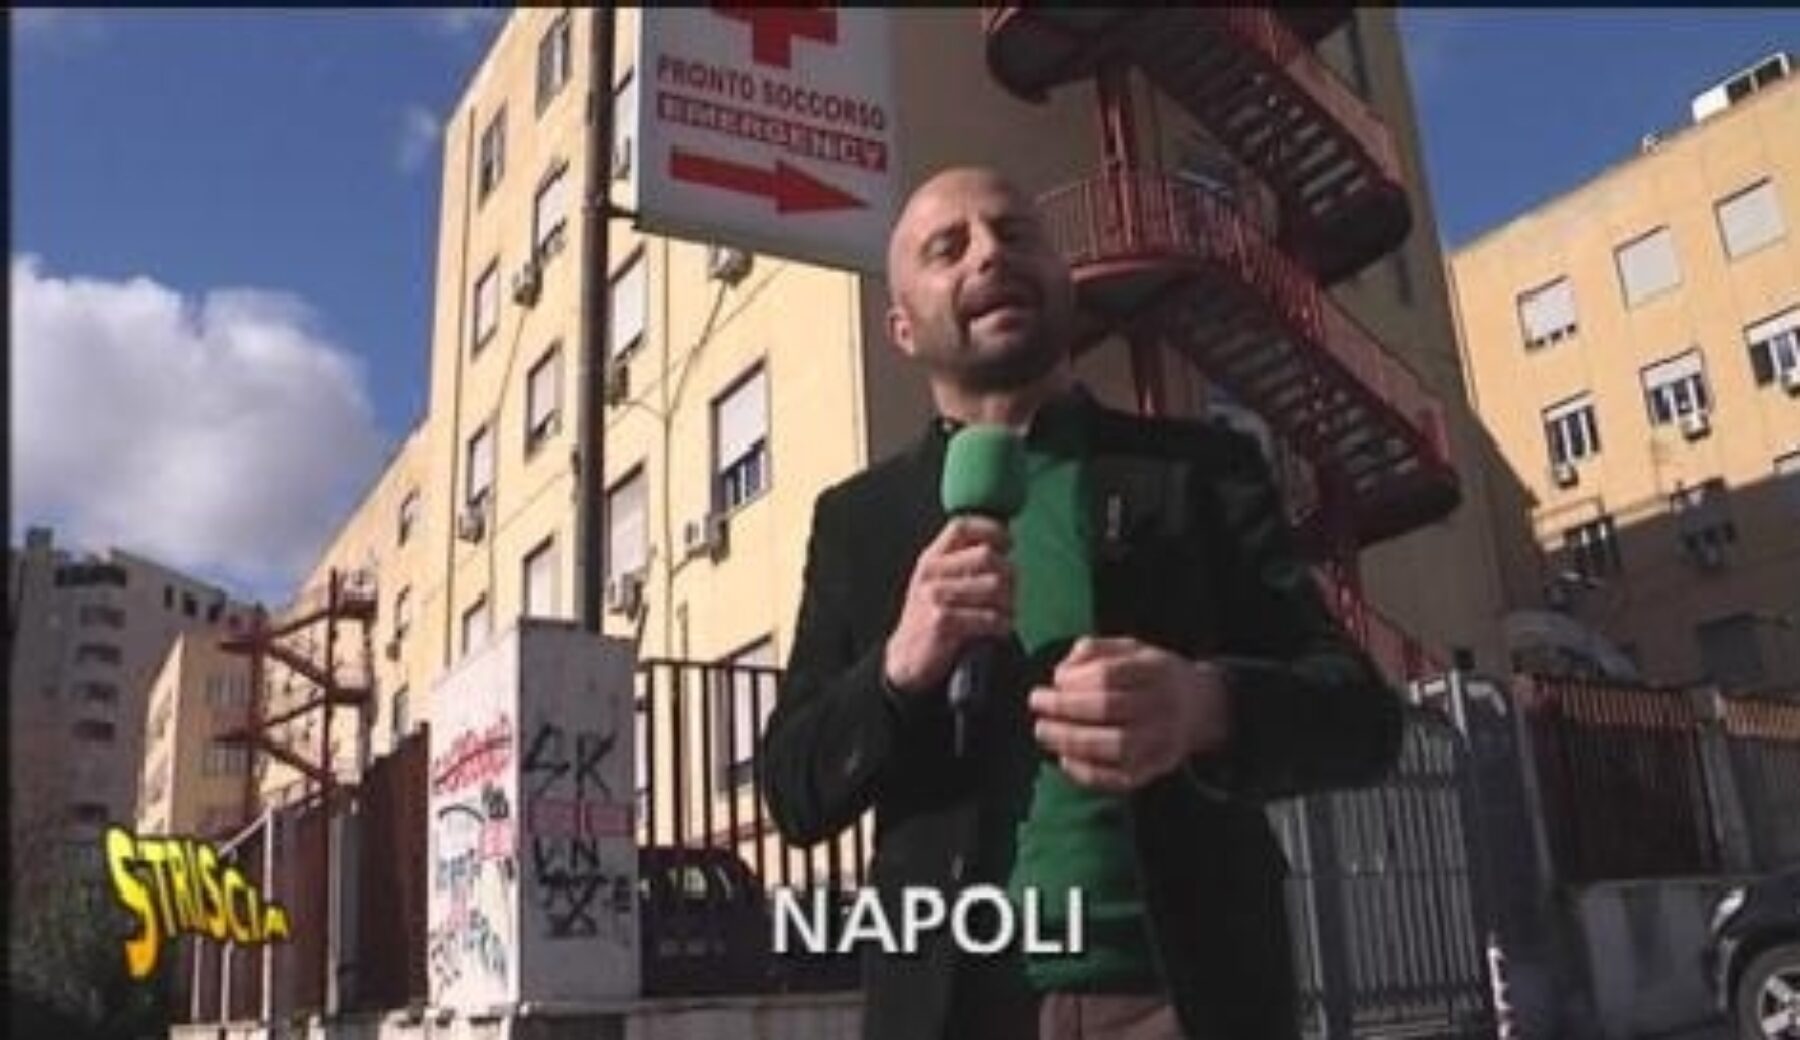 Striscia la notizia  all’ospedale Loreto Mare di Napoli
per segnalare i danni ai pazienti provocati anche dai furbetti del cartellino